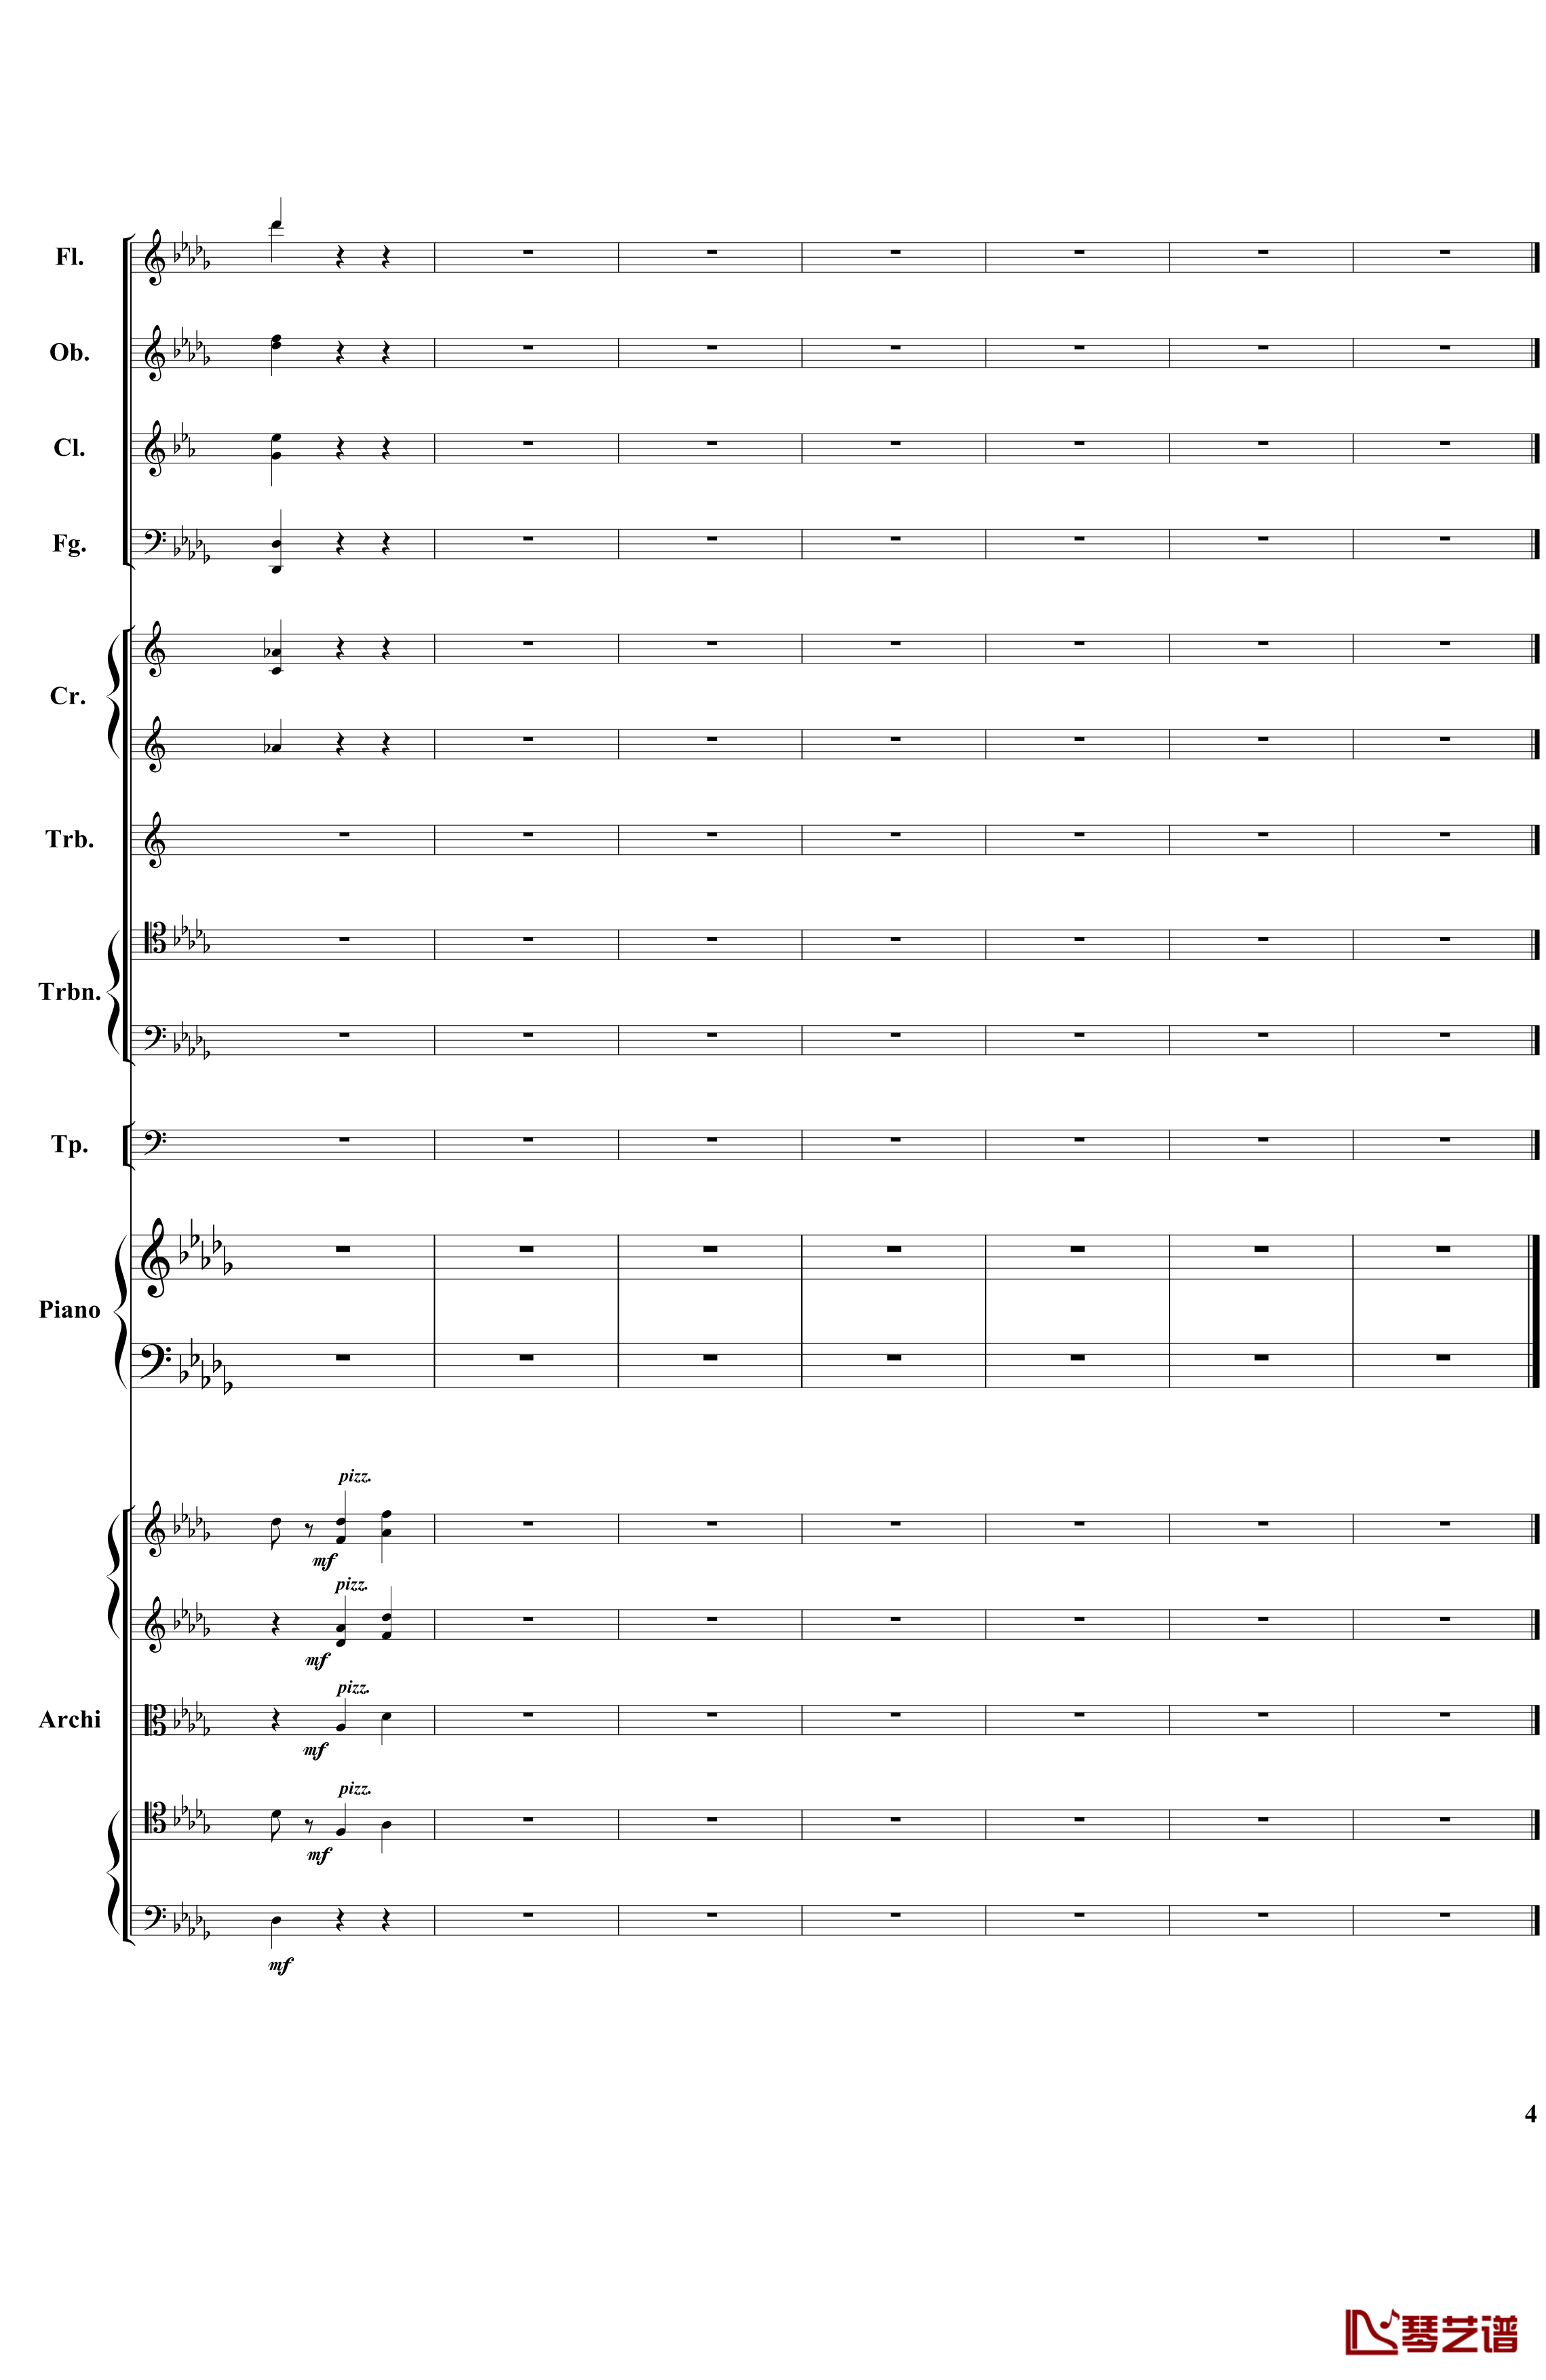 降B小调第一钢琴协奏曲钢琴谱-总谱-部分-柴科夫斯基-Peter Ilyich Tchaikovsky4